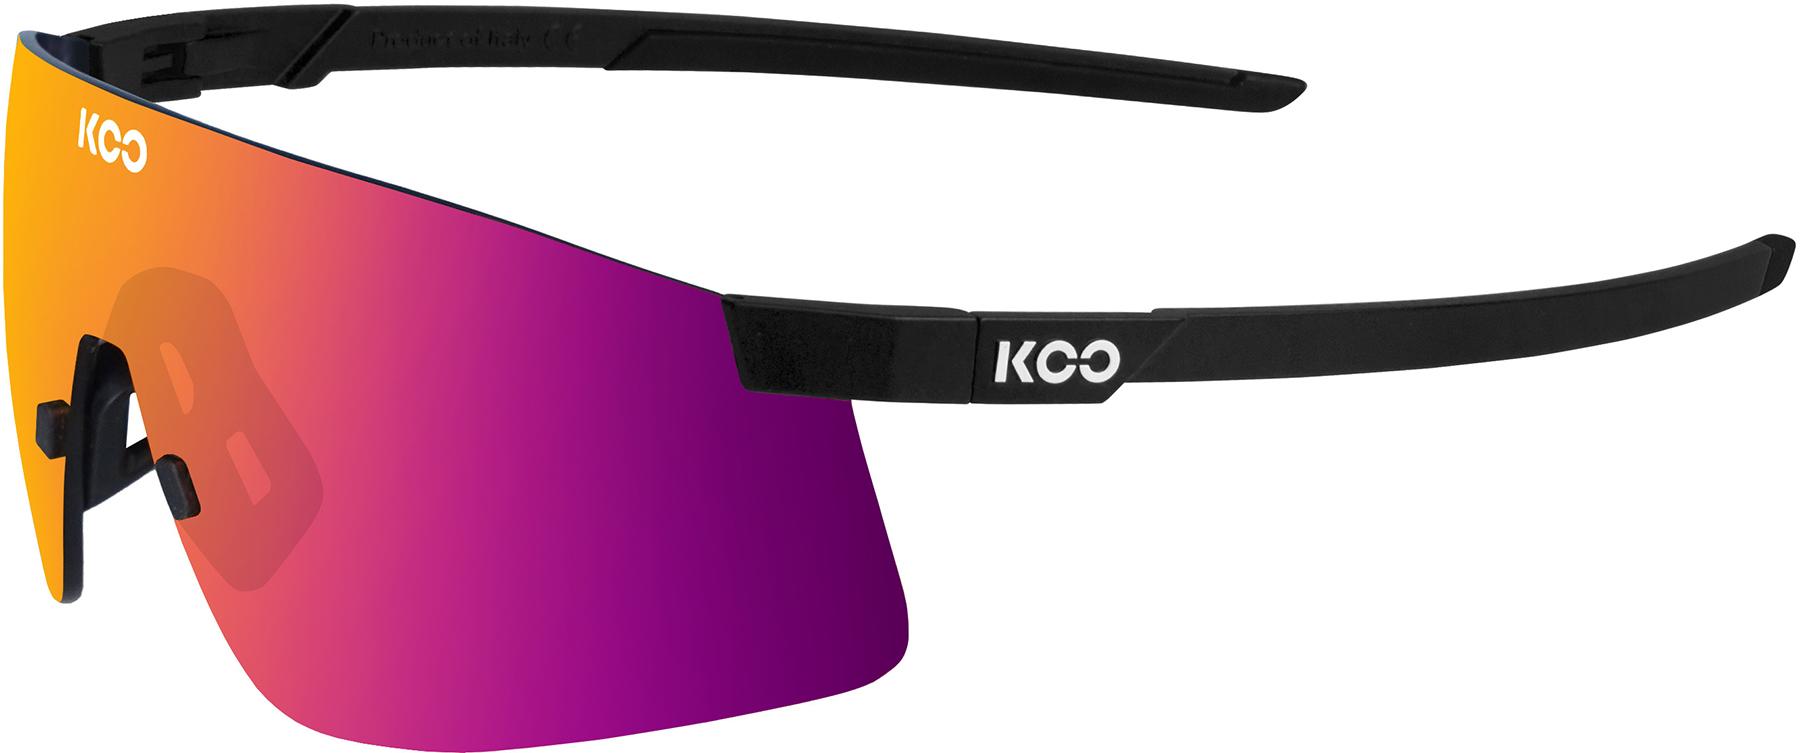 Koo Nova Black Matt Sunglasses (fuchsia Mirror Lens) - Black Matte/fuchsia